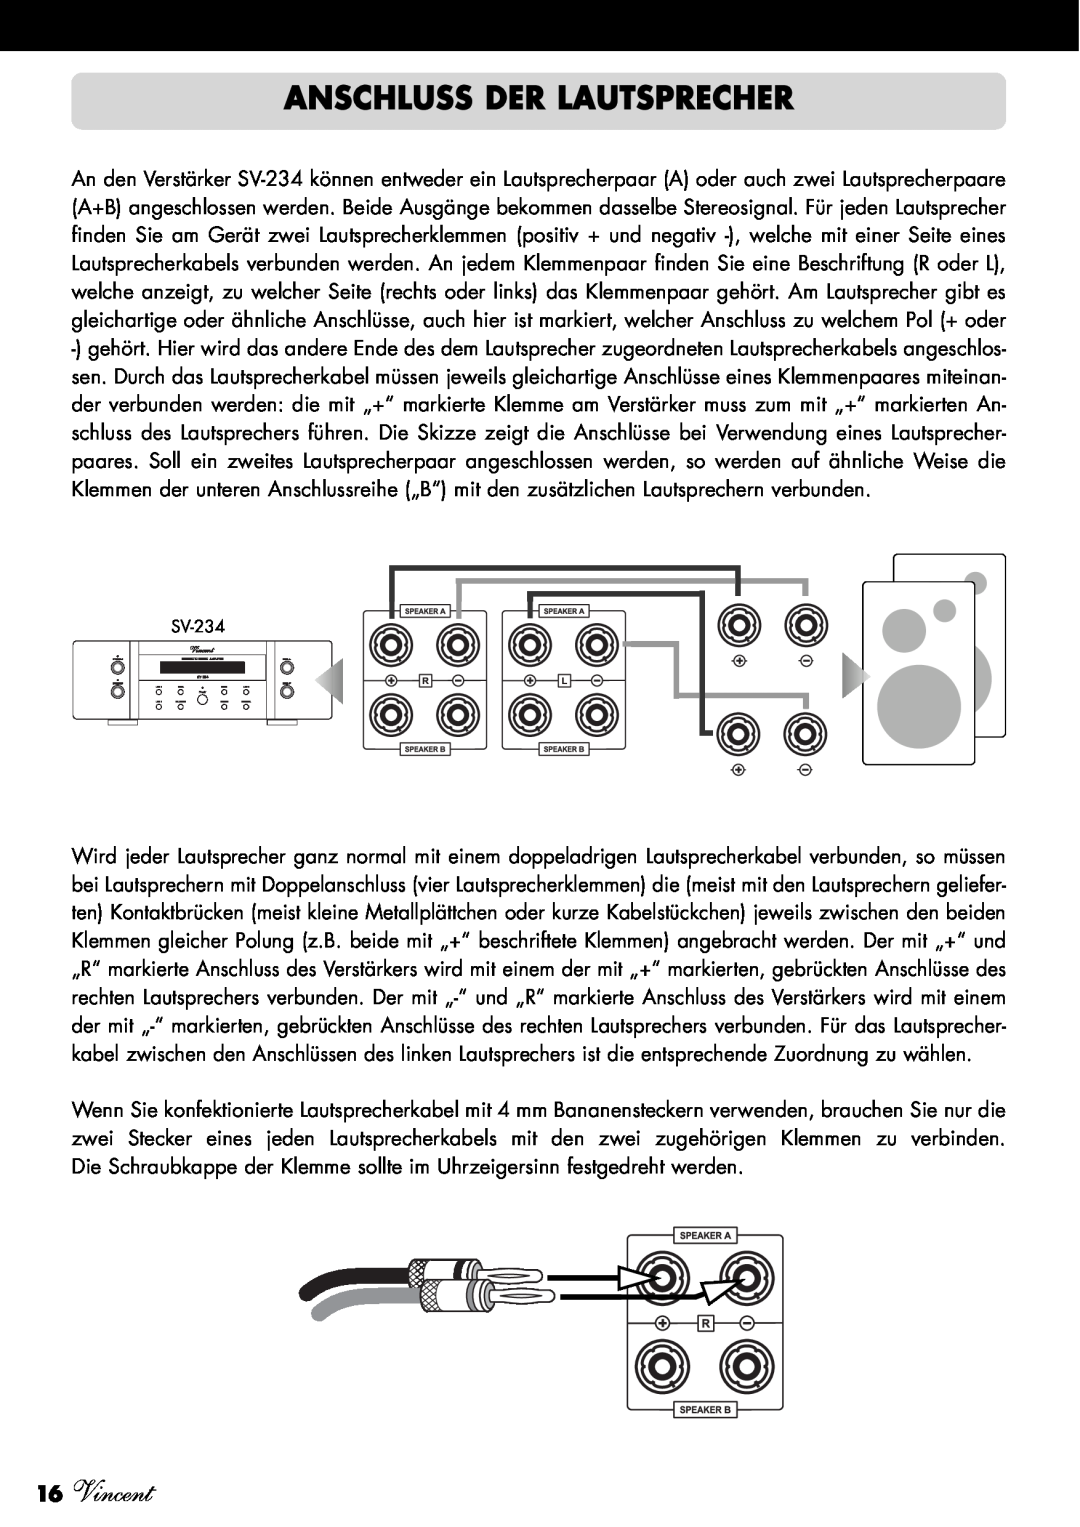 Vincent Audio SV-234 manuel dutilisation Anschluss Der Lautsprecher, 16Vincent 